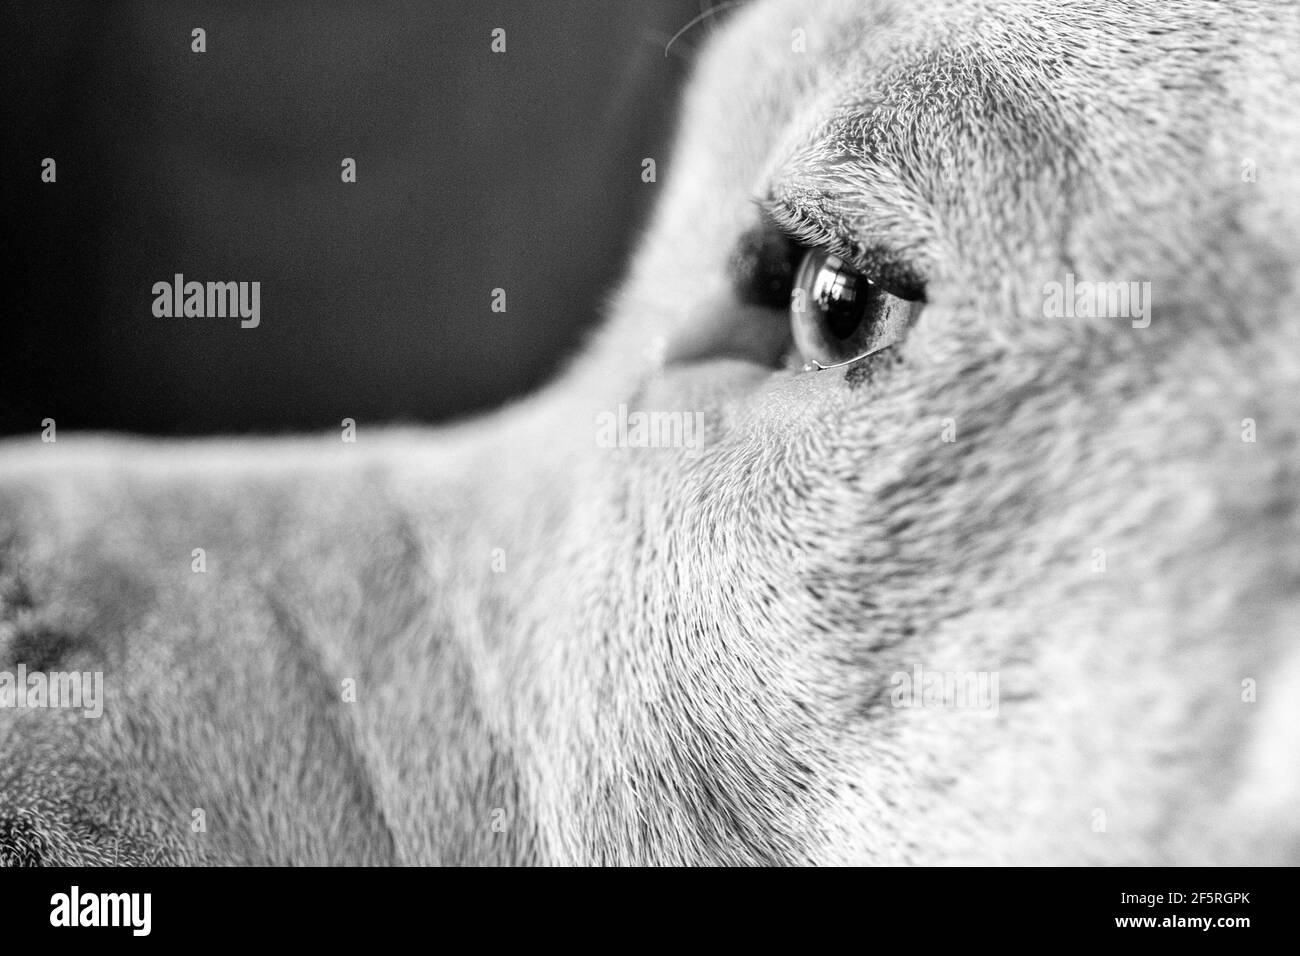 Gros plan d'un chien de race mixte (American Staffordshire Pit Bull Terrier et American Pit Bull Terrier) (Canis lupus familiaris) Banque D'Images